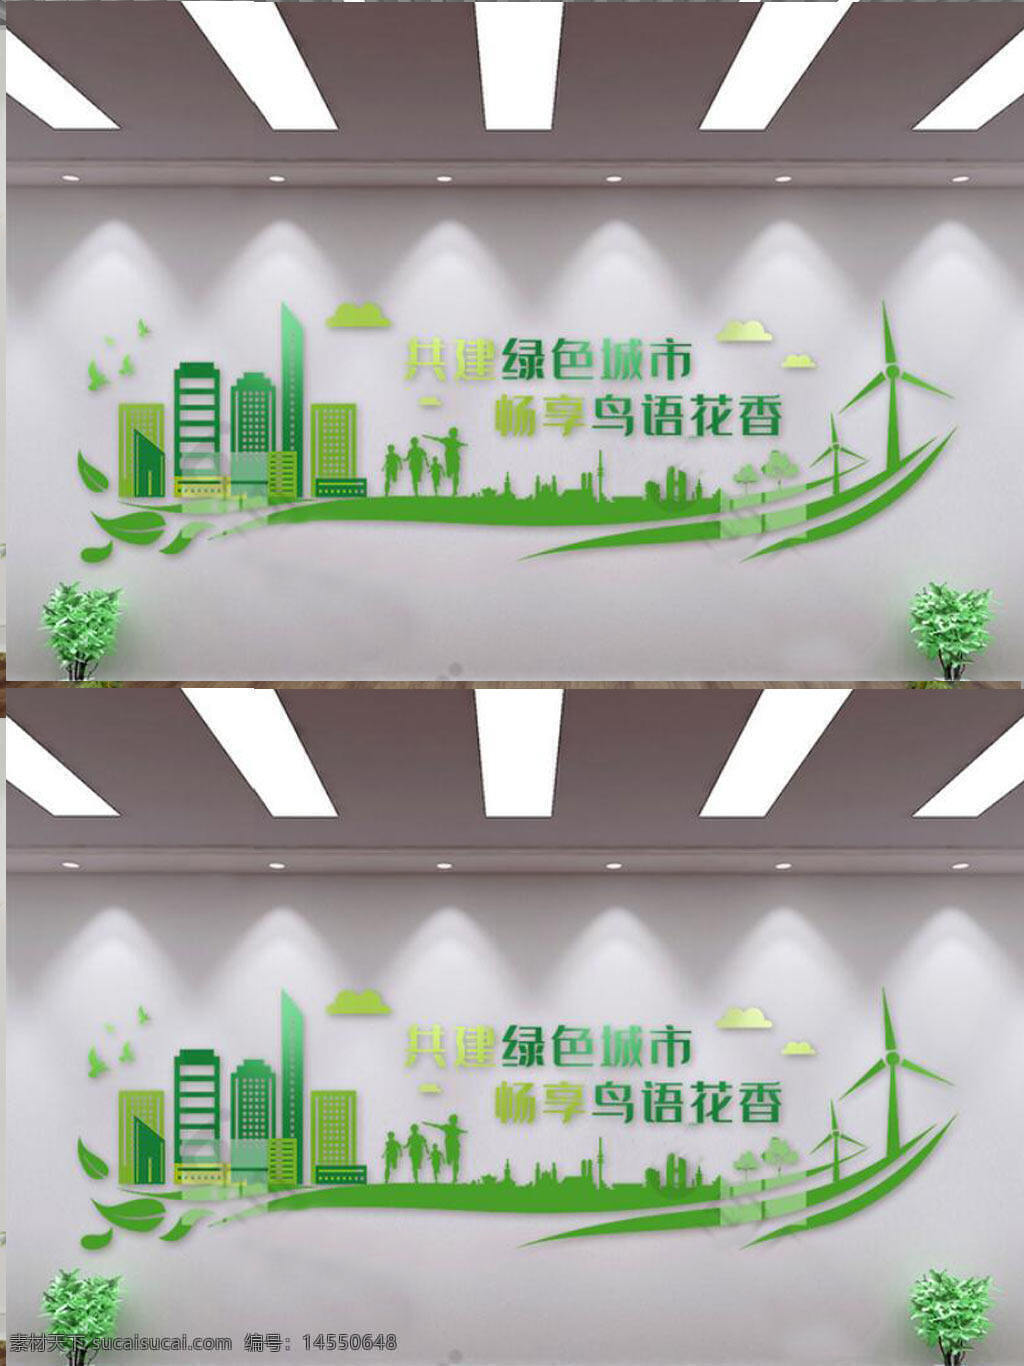 企业绿色低碳环保文化墙 企业 绿色 低碳 环保 文化墙